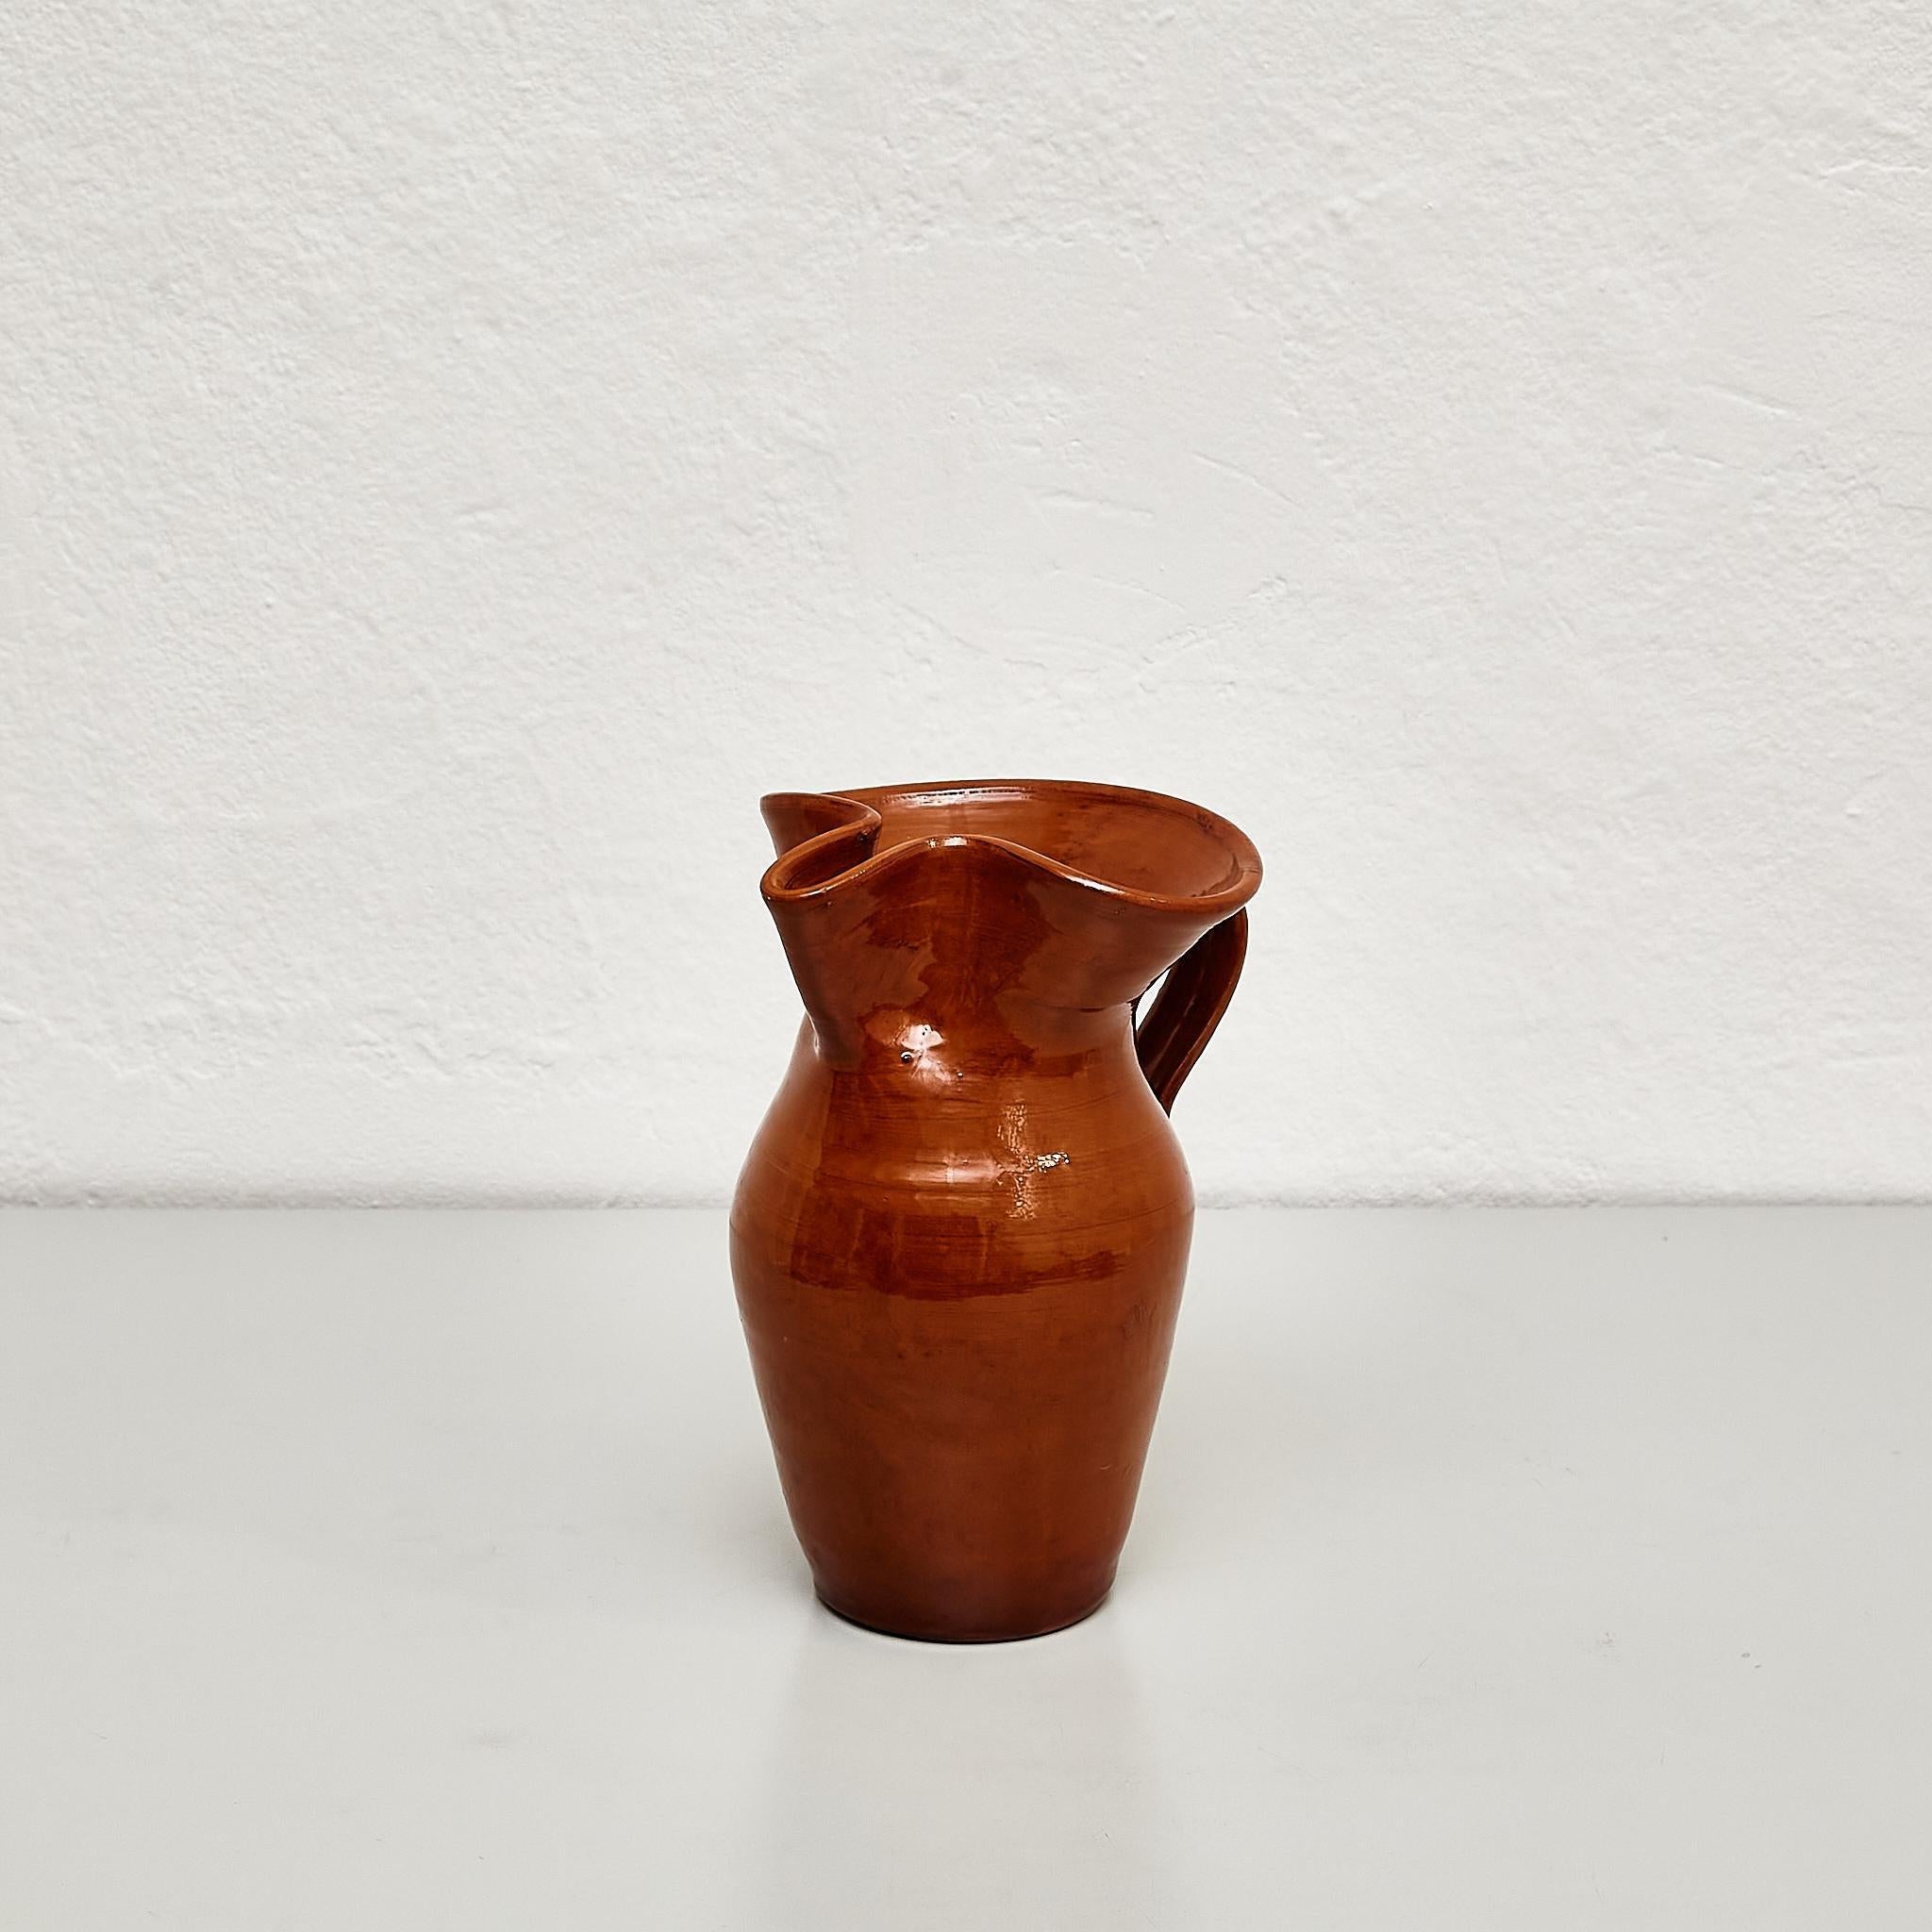 Vase en céramique espagnole traditionnelle du milieu du 20e siècle.

Fabriqué en Espagne.

En état d'origine avec une usure mineure conforme à l'âge et à l'utilisation, préservant une belle patine.

Matériaux : 
Céramique

Informations importantes